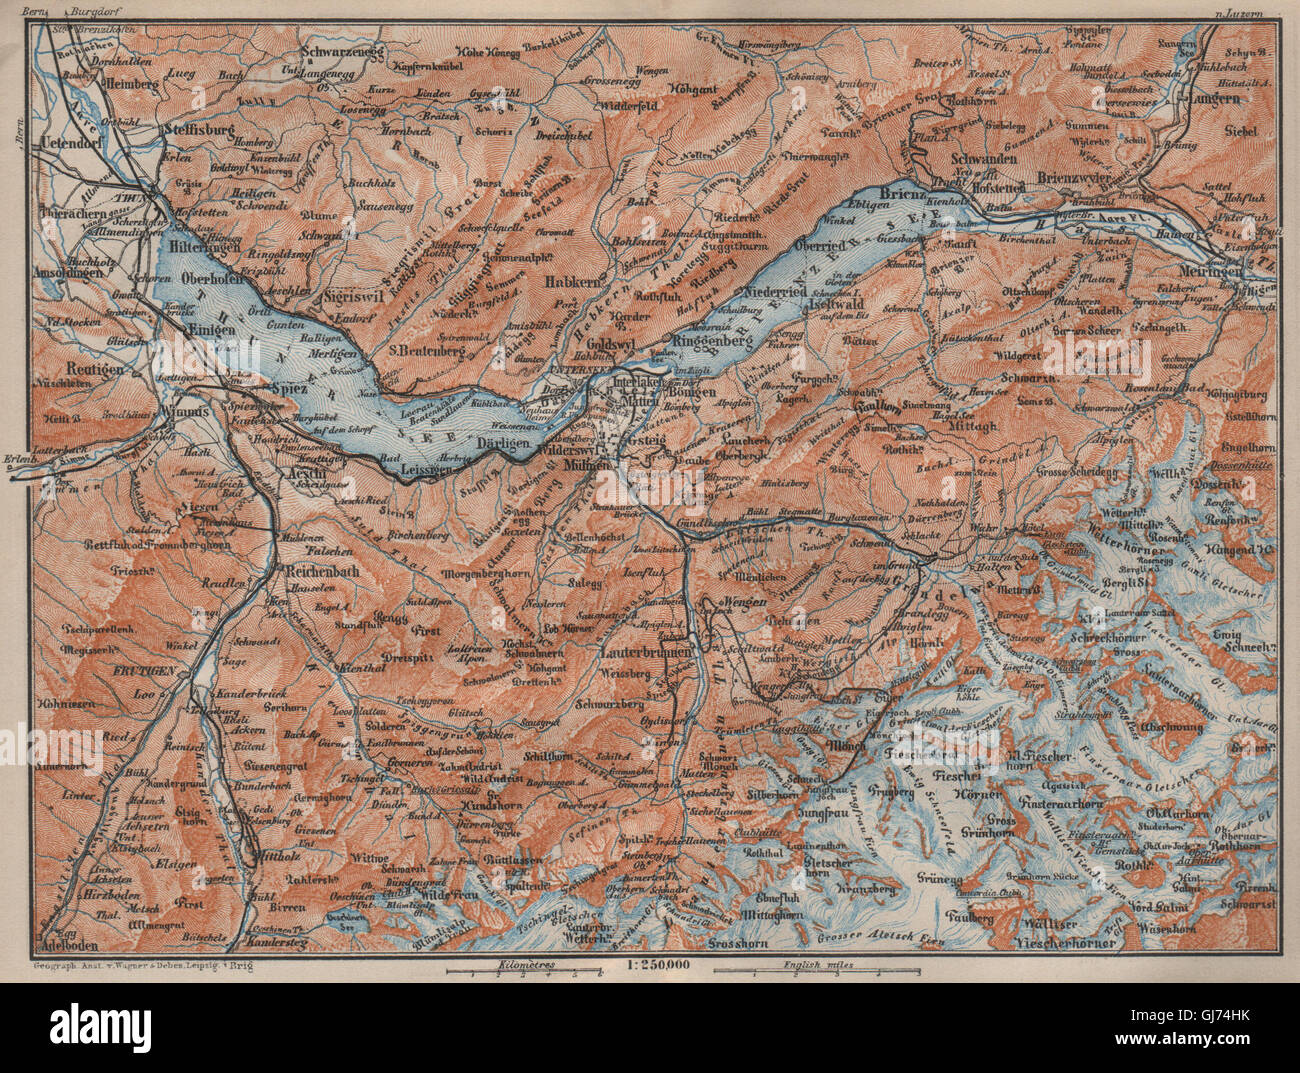 BERNESE OBERLAND. Wengen Mürren Grundelwald Reutigen Interlaken Eiger, 1913 map Stock Photo